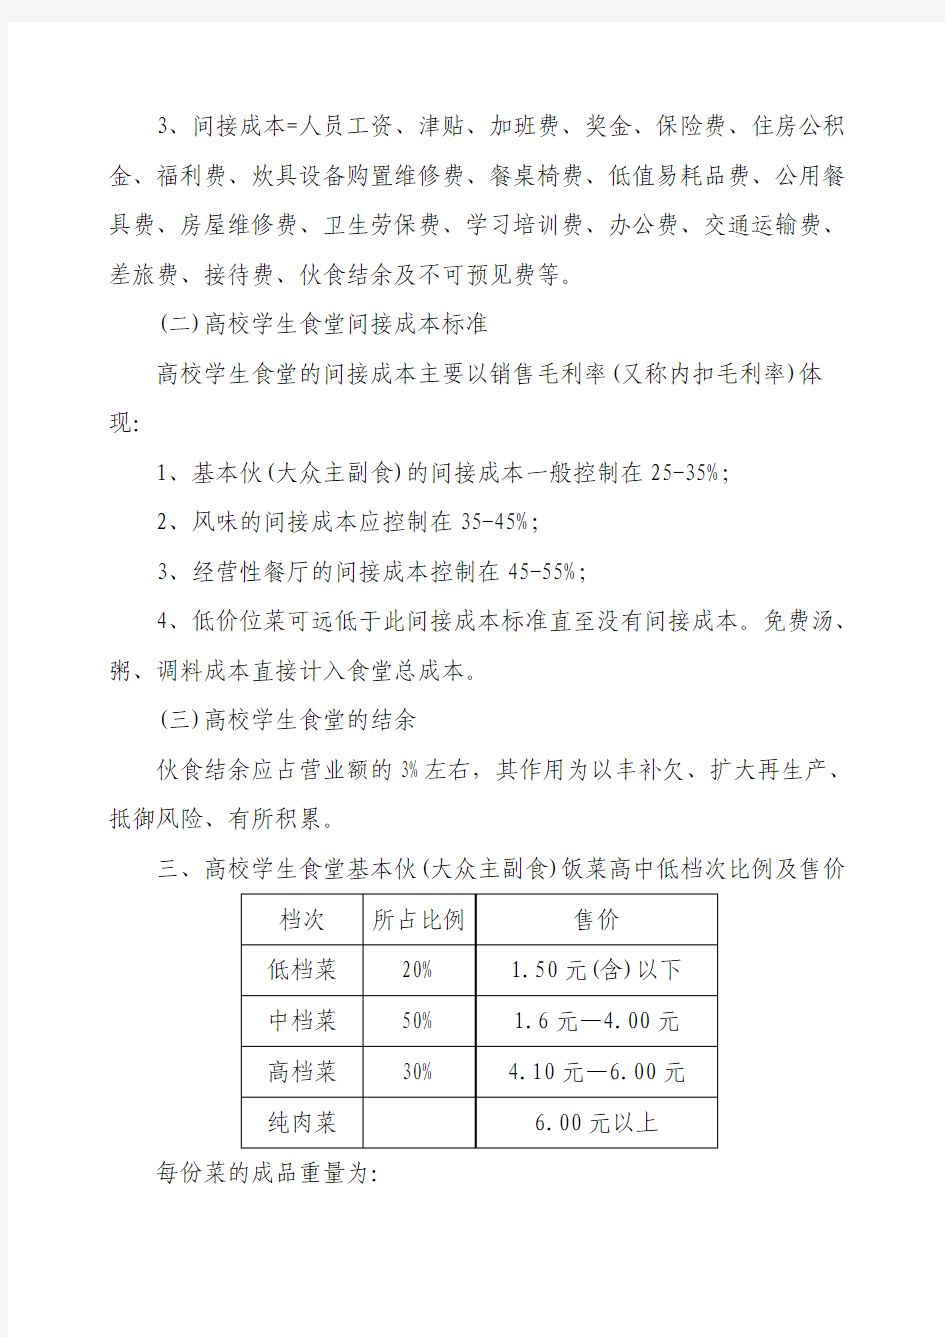 北京市教育委员会关于印发北京高校学生食堂成本核算指导标准的通知